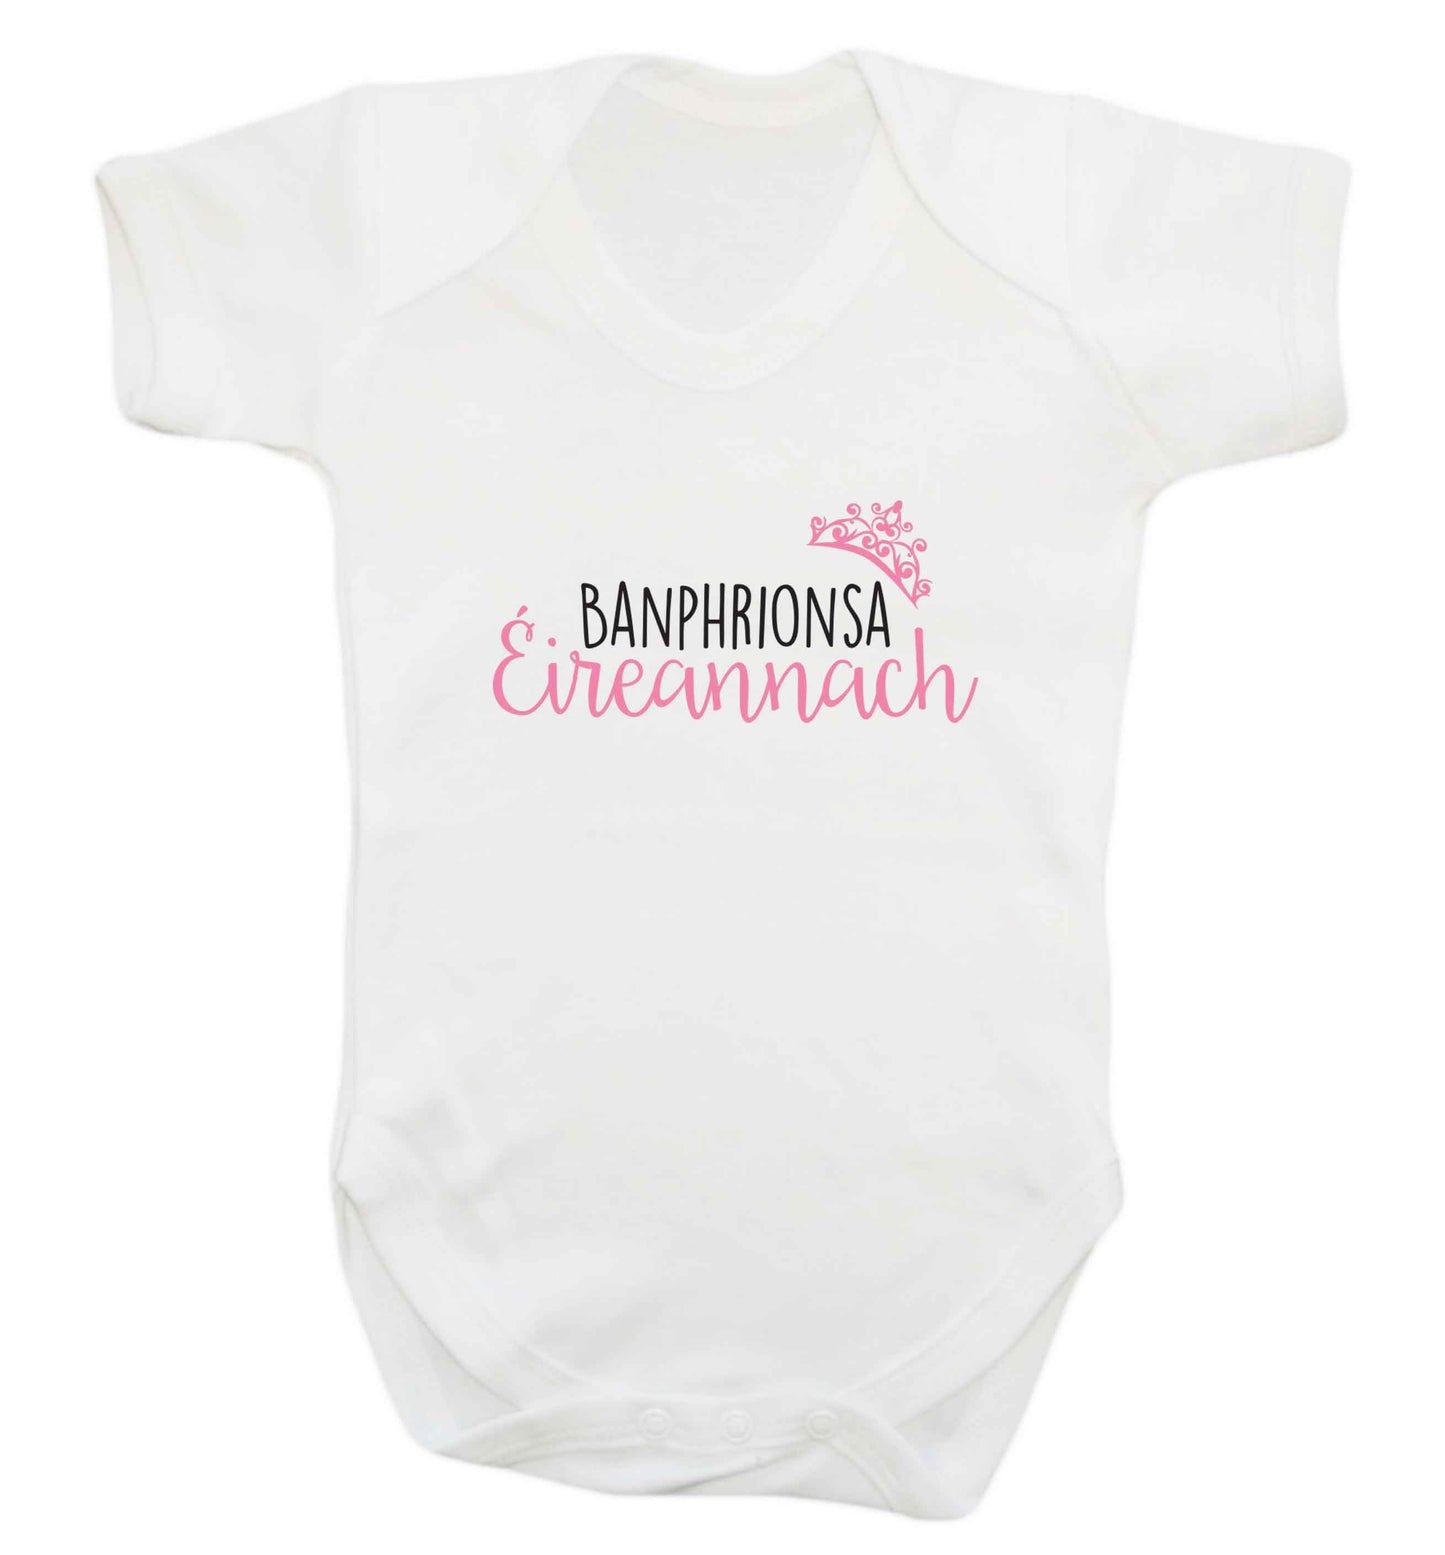 Banphrionsa eireannach baby vest white 18-24 months